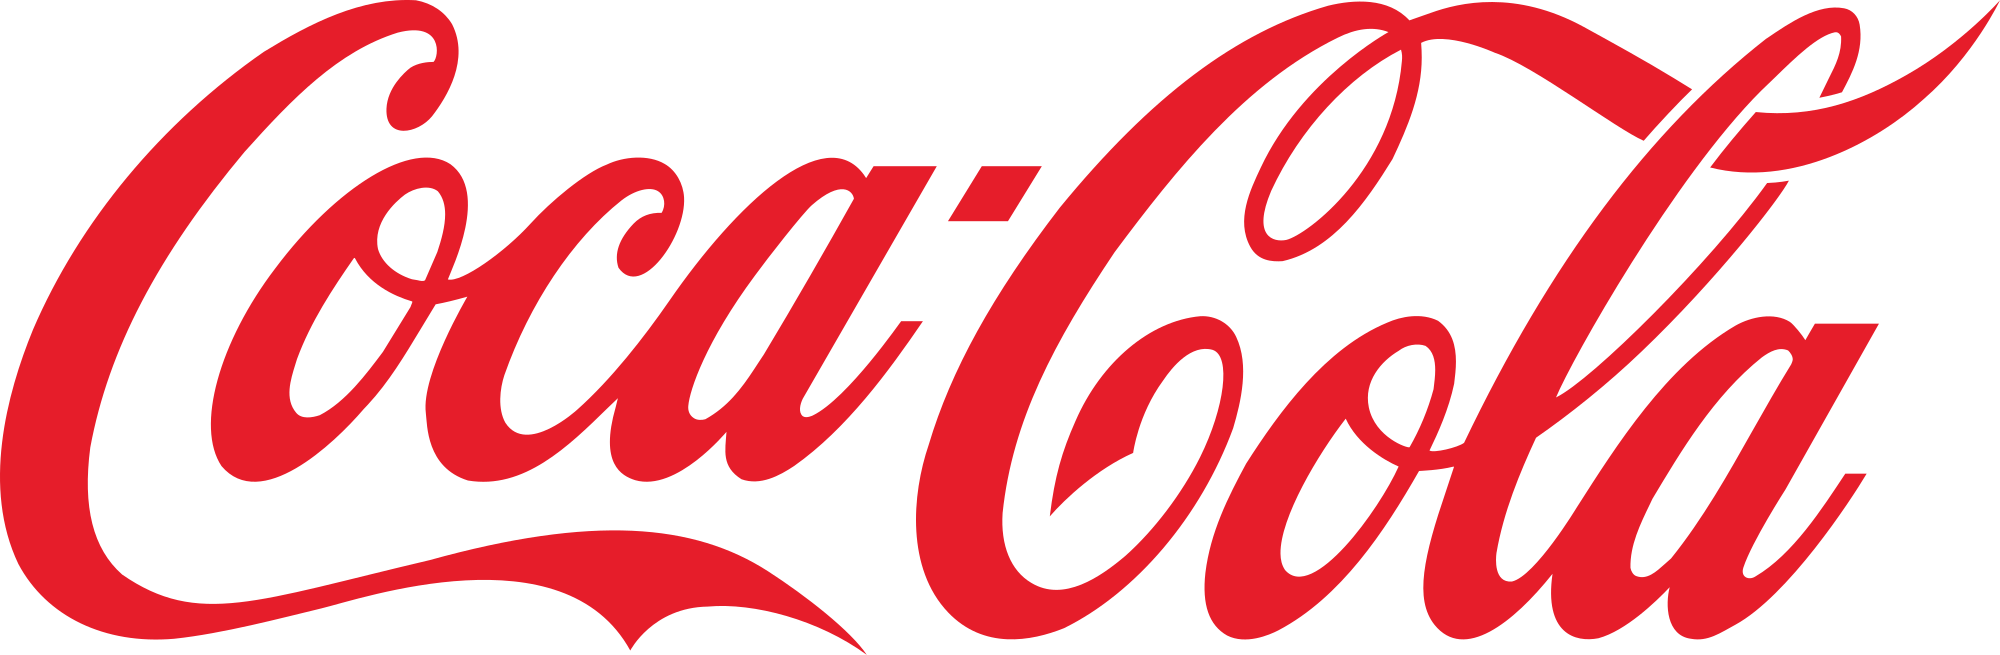 Coca Cola Logo.svg